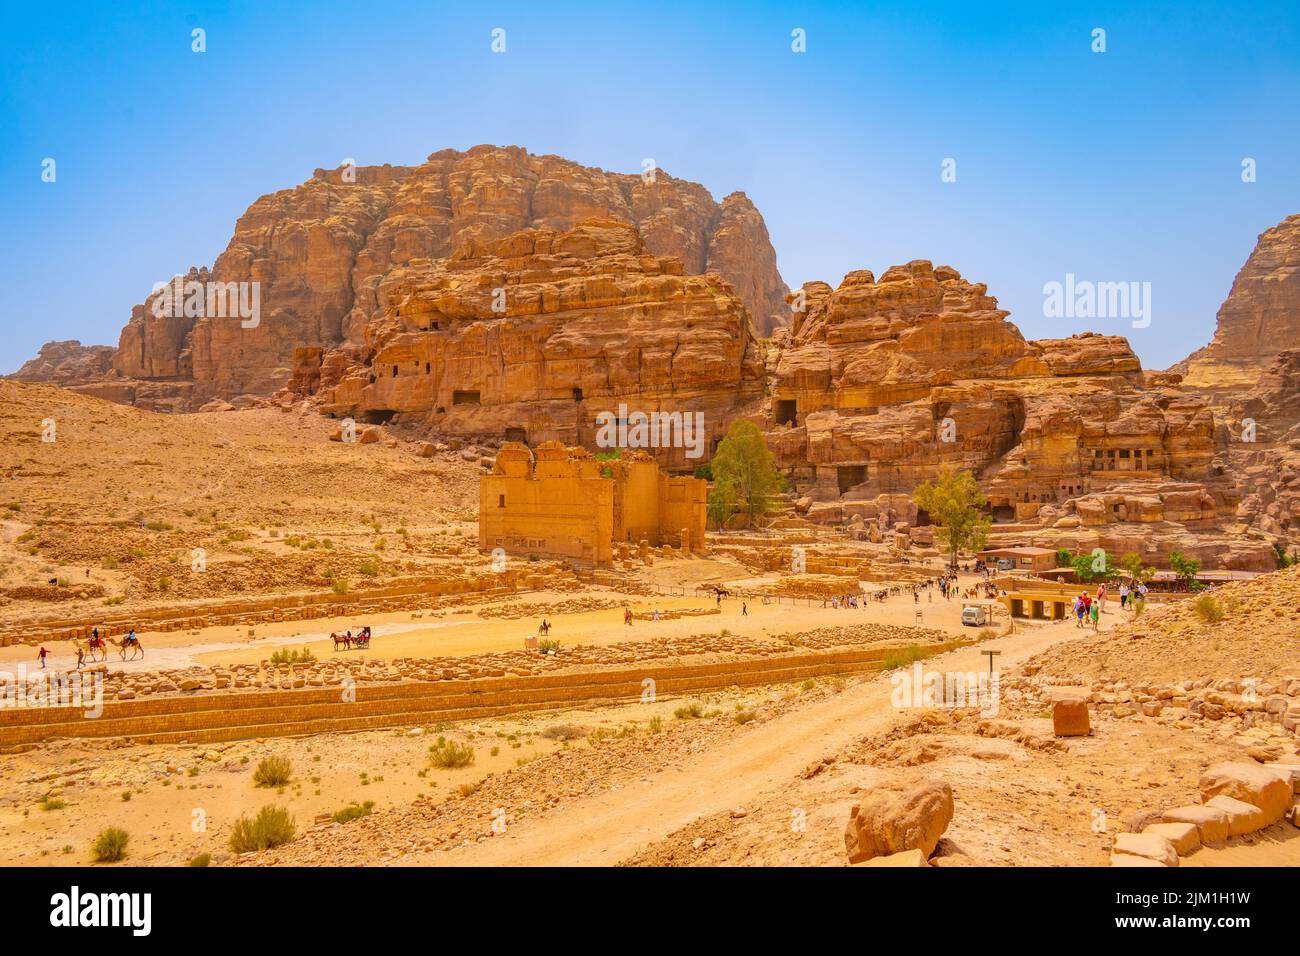 Looking towards Qasr al-Bint in Petra Jordan Stock Photo